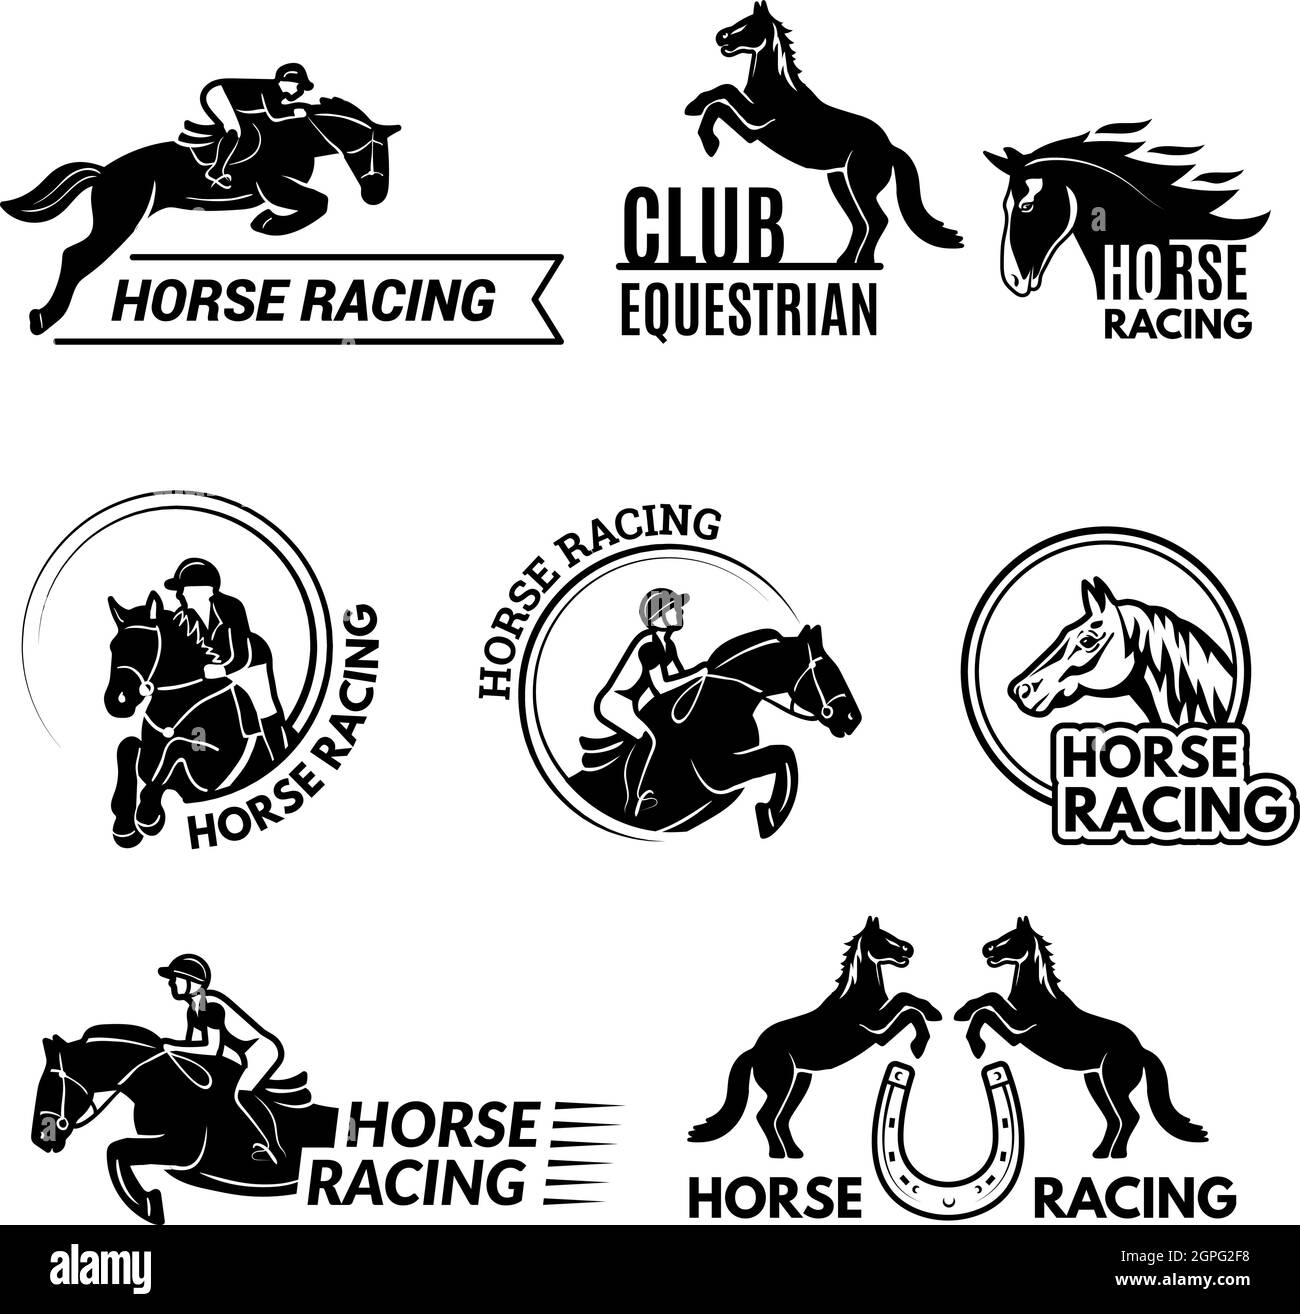 Abzeichen für Pferderennen. Pferdesport Logo oder Emblem mit Rennpferd in verschiedenen Posen Polo Club Vektor-Vorlagen Stock Vektor